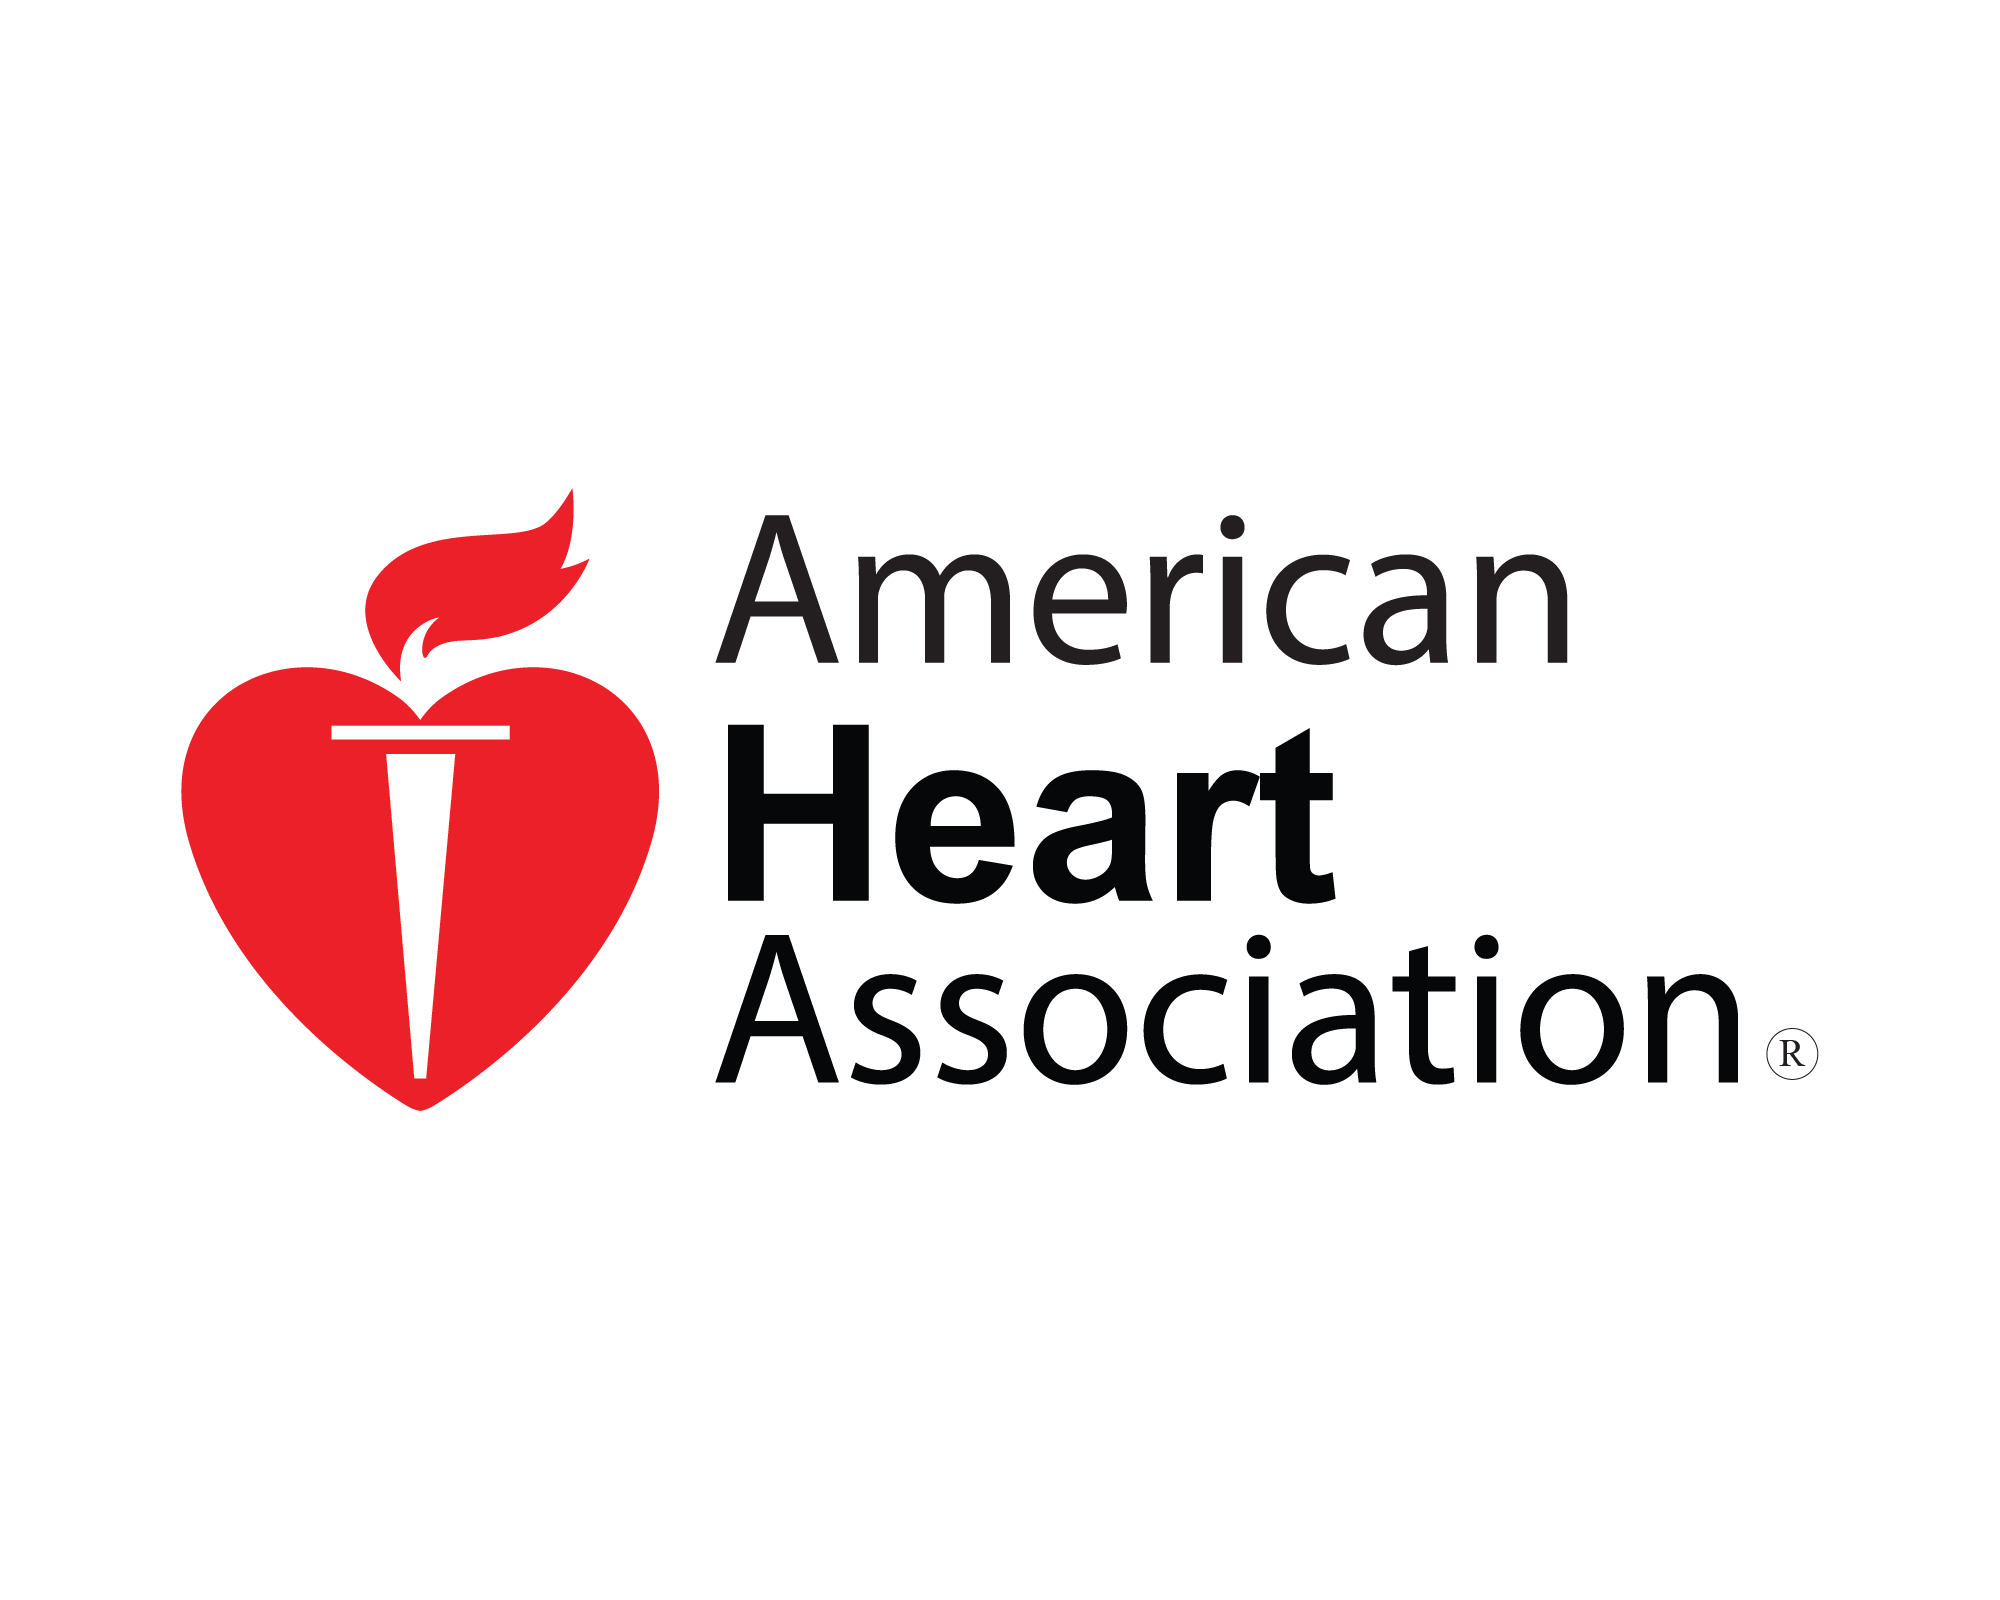 American heart. Американ Харт Ассоциация. Американская кардиологическая Ассоциация. Амеркианскоая Ассоциация кардиоо. Логотип American Heart Association.